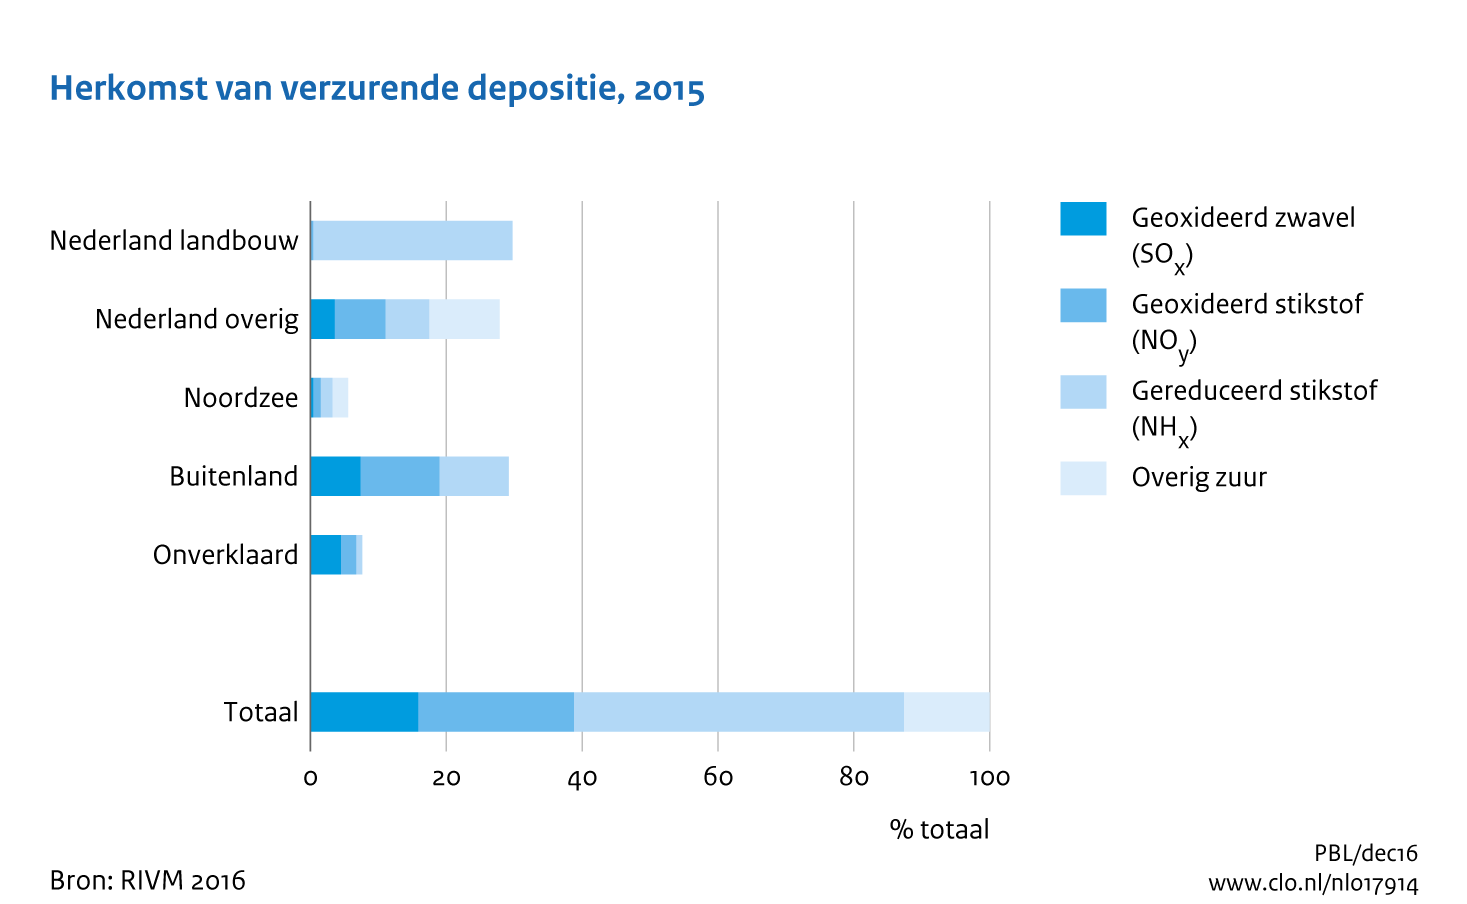 Figuur Herkomst verzurende deposities op Nederland 2015. In de rest van de tekst wordt deze figuur uitgebreider uitgelegd.